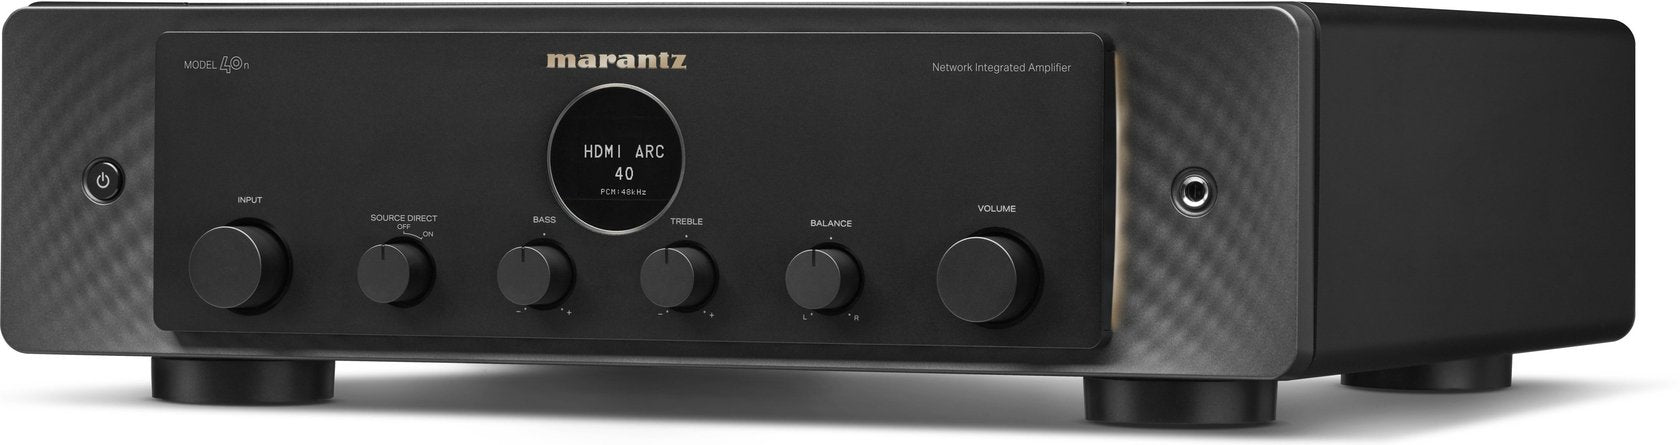 Marantz MODEL 40n stereo amplifier